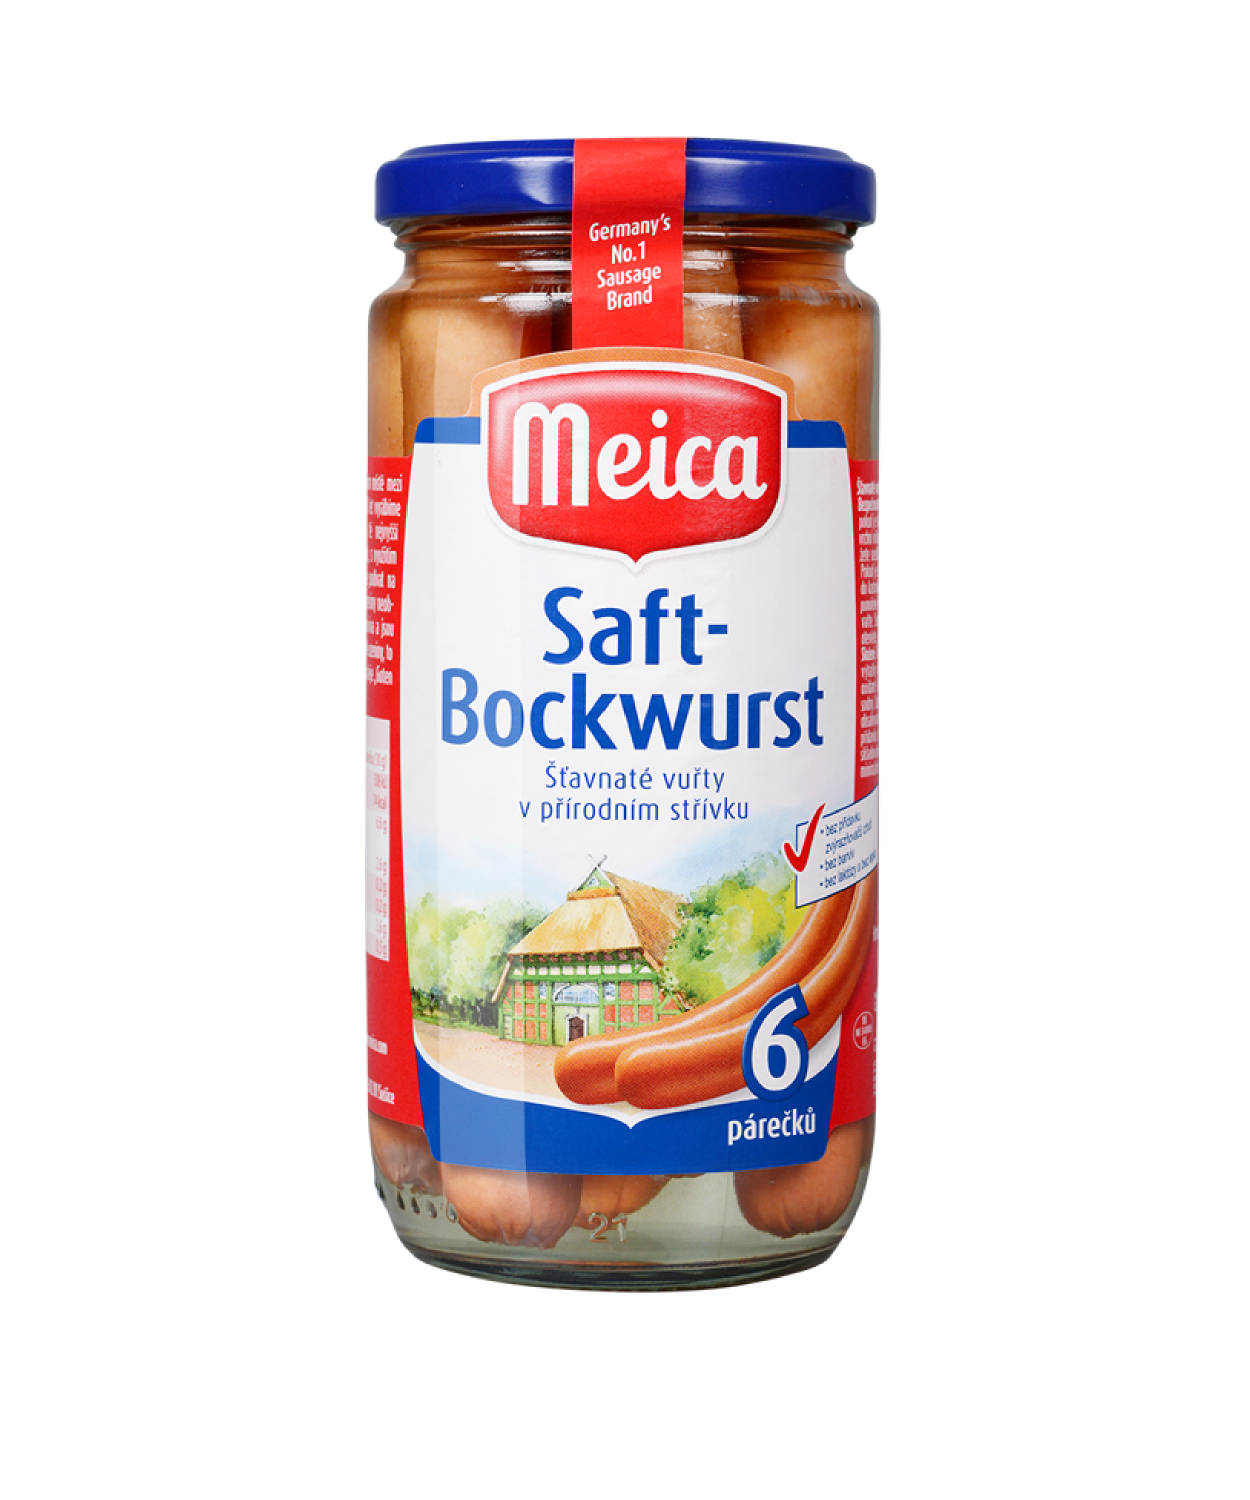 Meica-Saft-Bockwurst-6-parku-20200309-m (1)